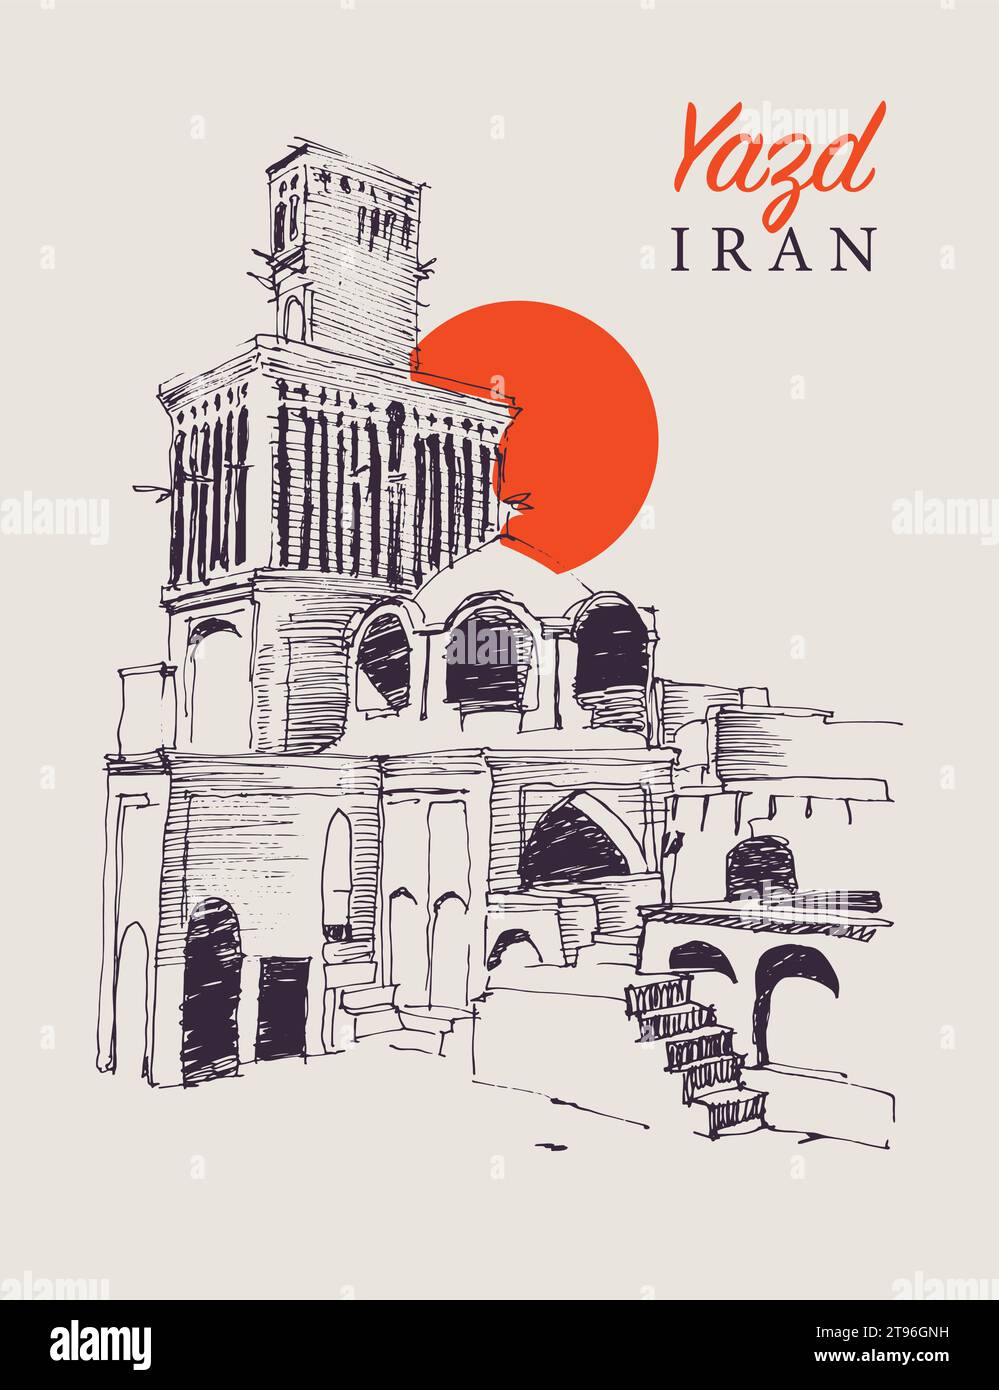 Illustrazione di uno schizzo vettoriale disegnato a mano della città di Yazd in Iran, famosa per le sue torri di cattura del vento e l'architettura unica. Illustrazione Vettoriale